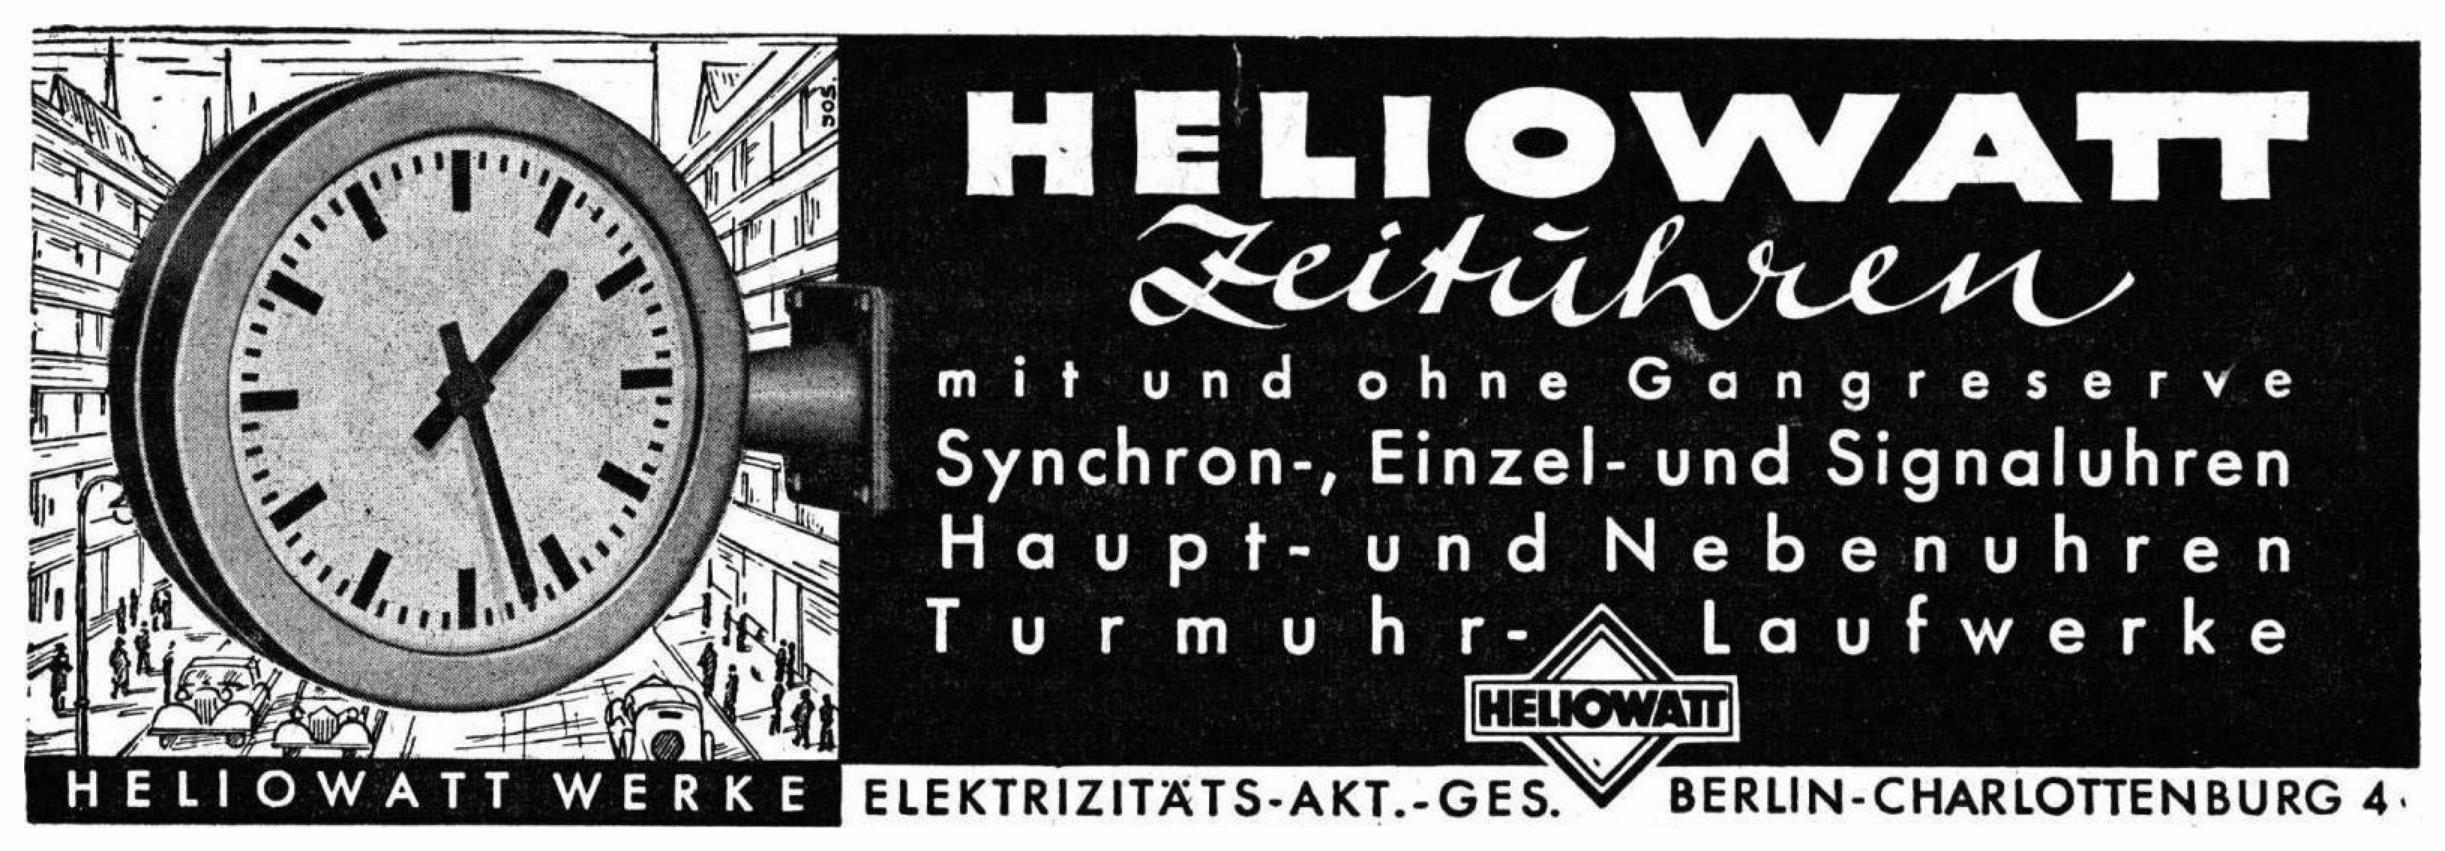 heliowatt 1943 30.jpg